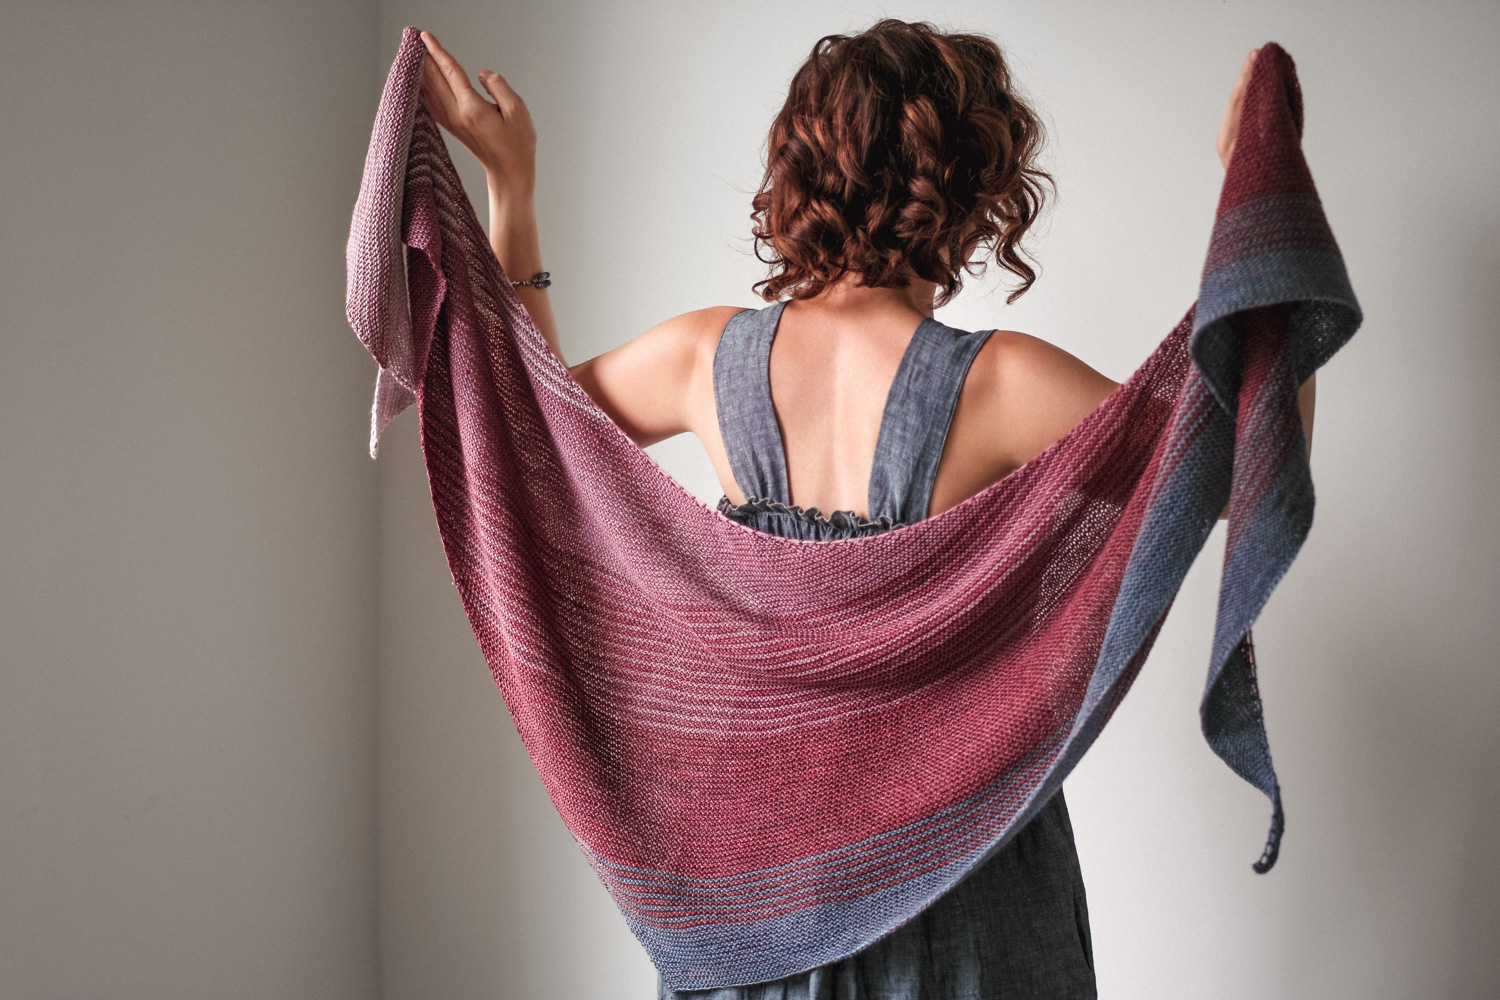 Knitting Patterns @ Wonderland Yarns: Sussurro Shawl